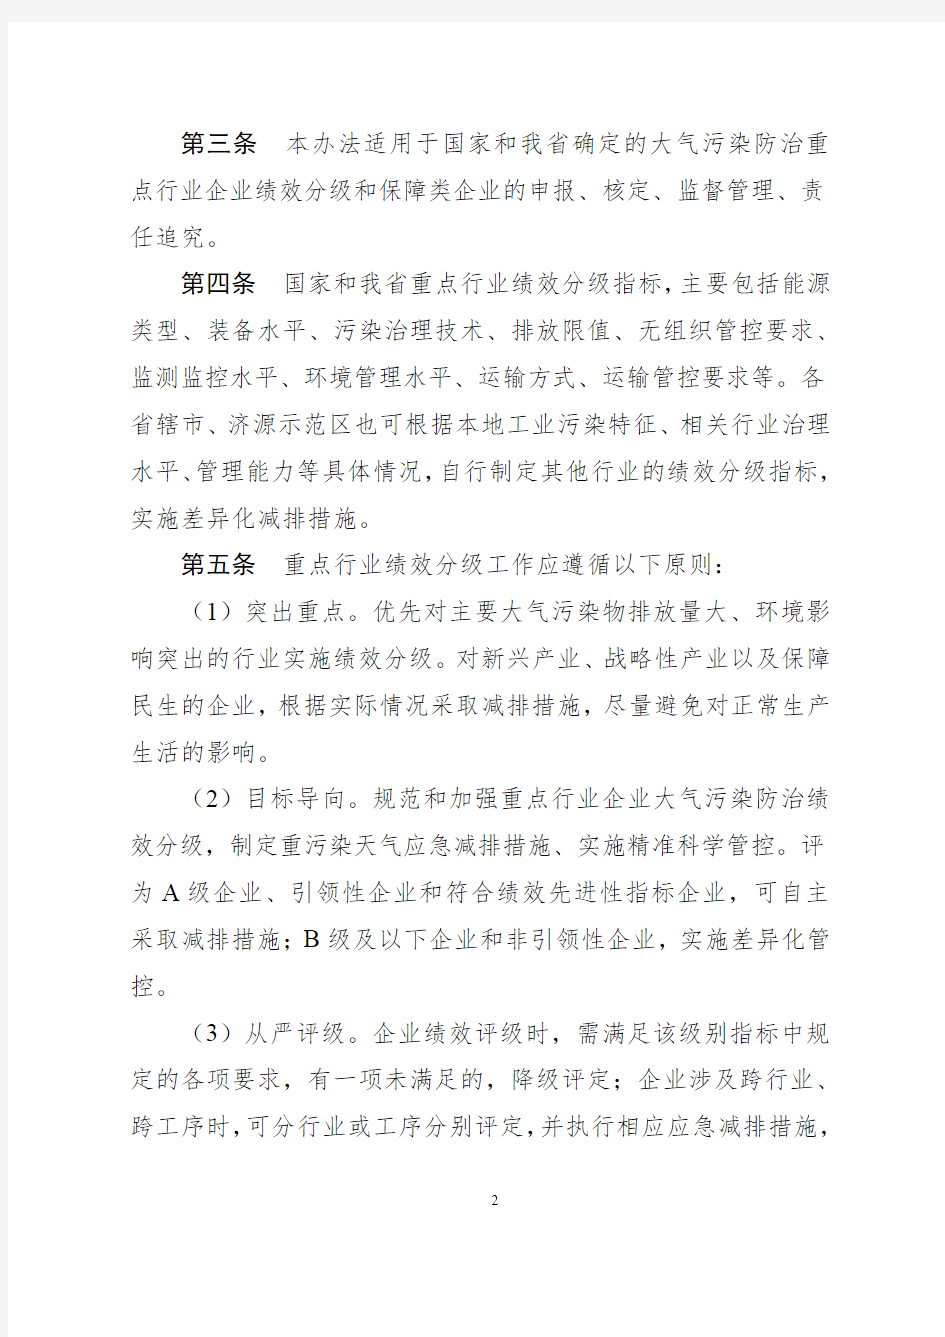 河南省2020年重污染天气重点行业绩效分级实施办法(试行)正式稿